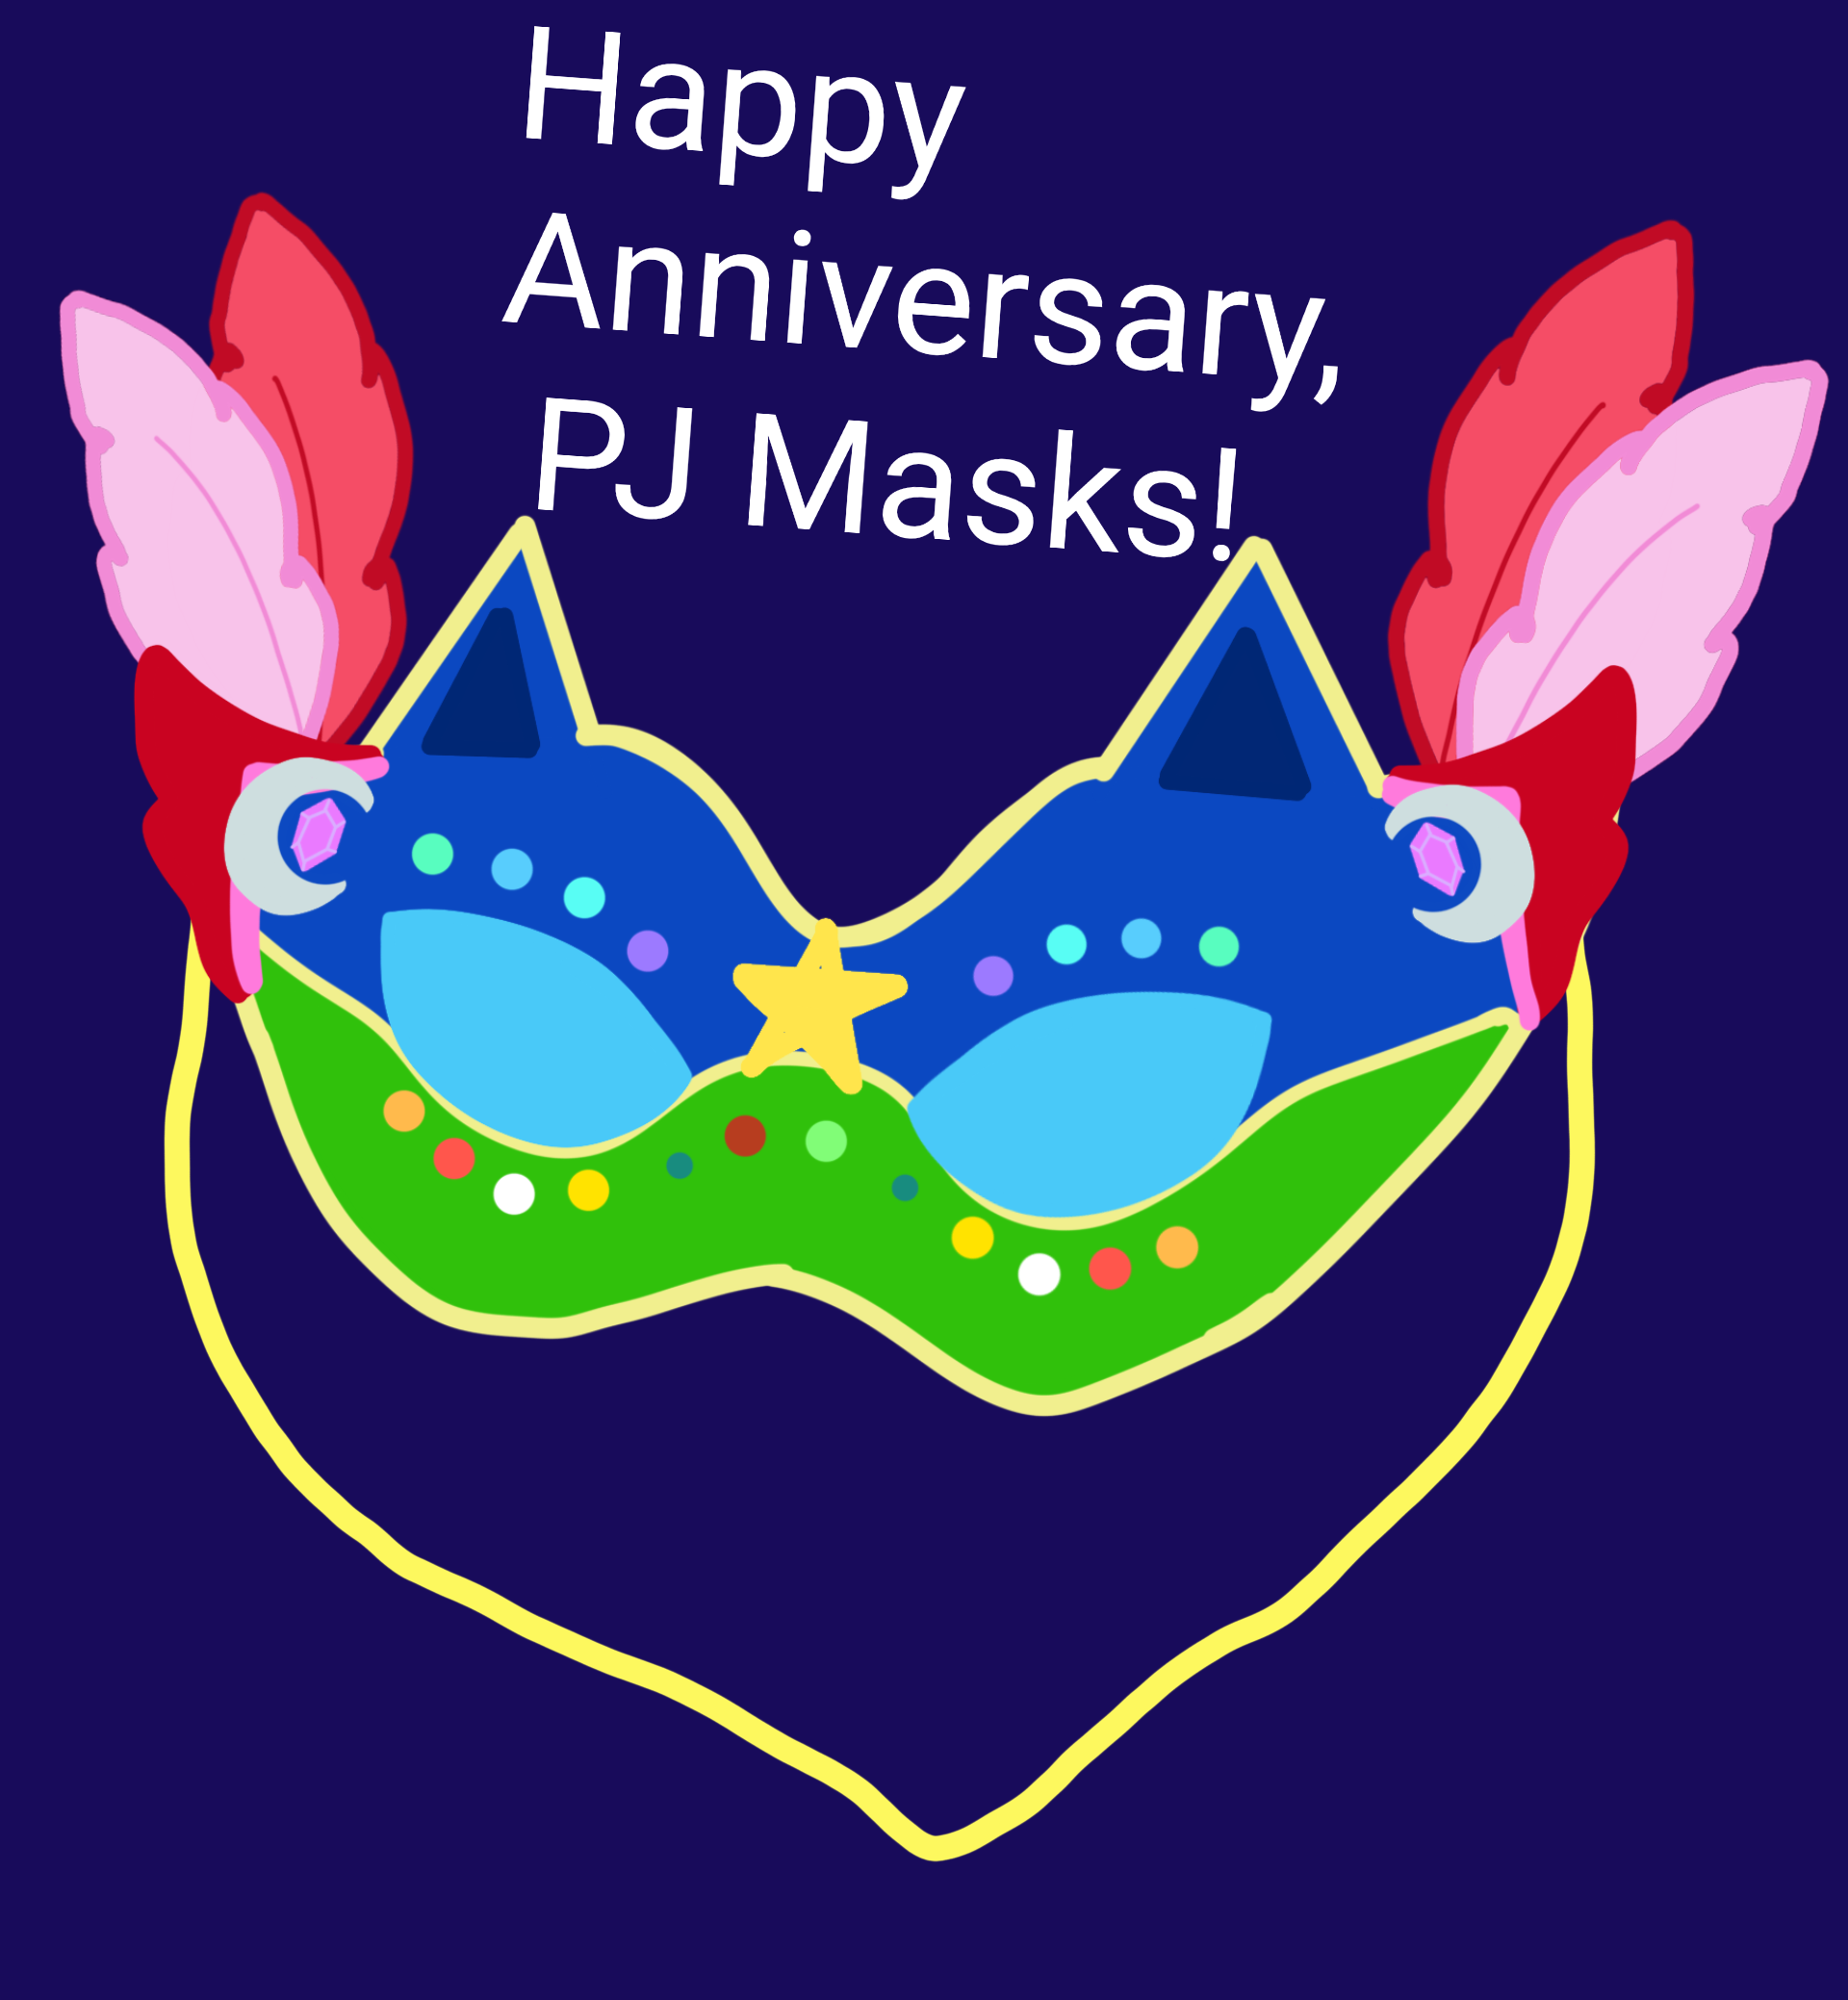 PJ Masks Kids Underwear Briefs Pants Green 3 Pack 18 month - 5